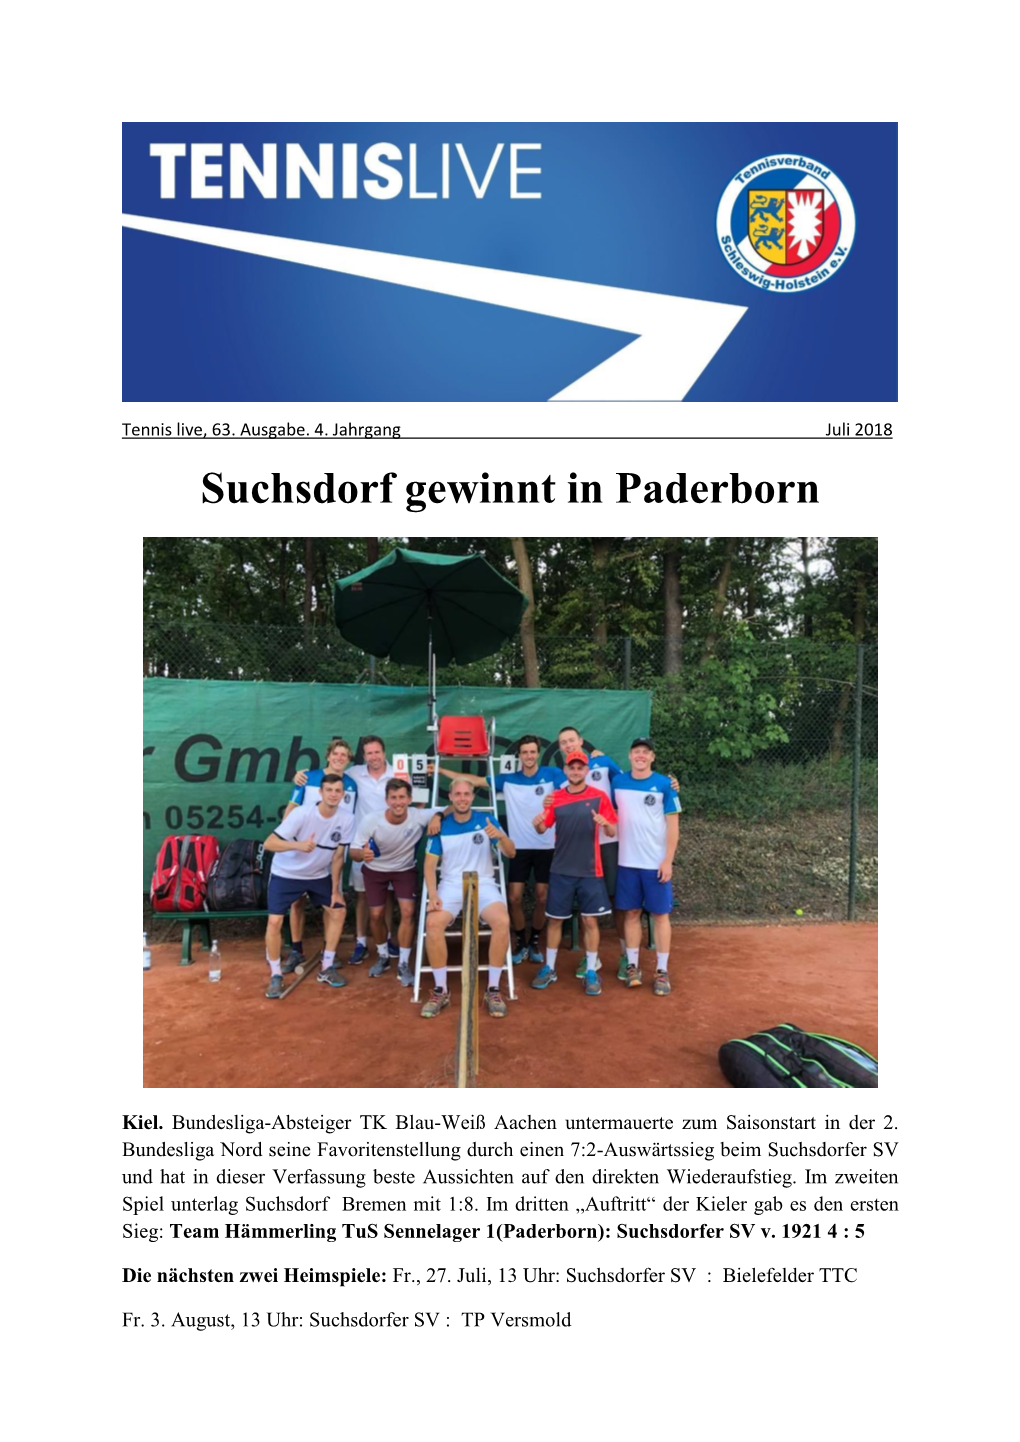 Suchsdorf Gewinnt in Paderborn